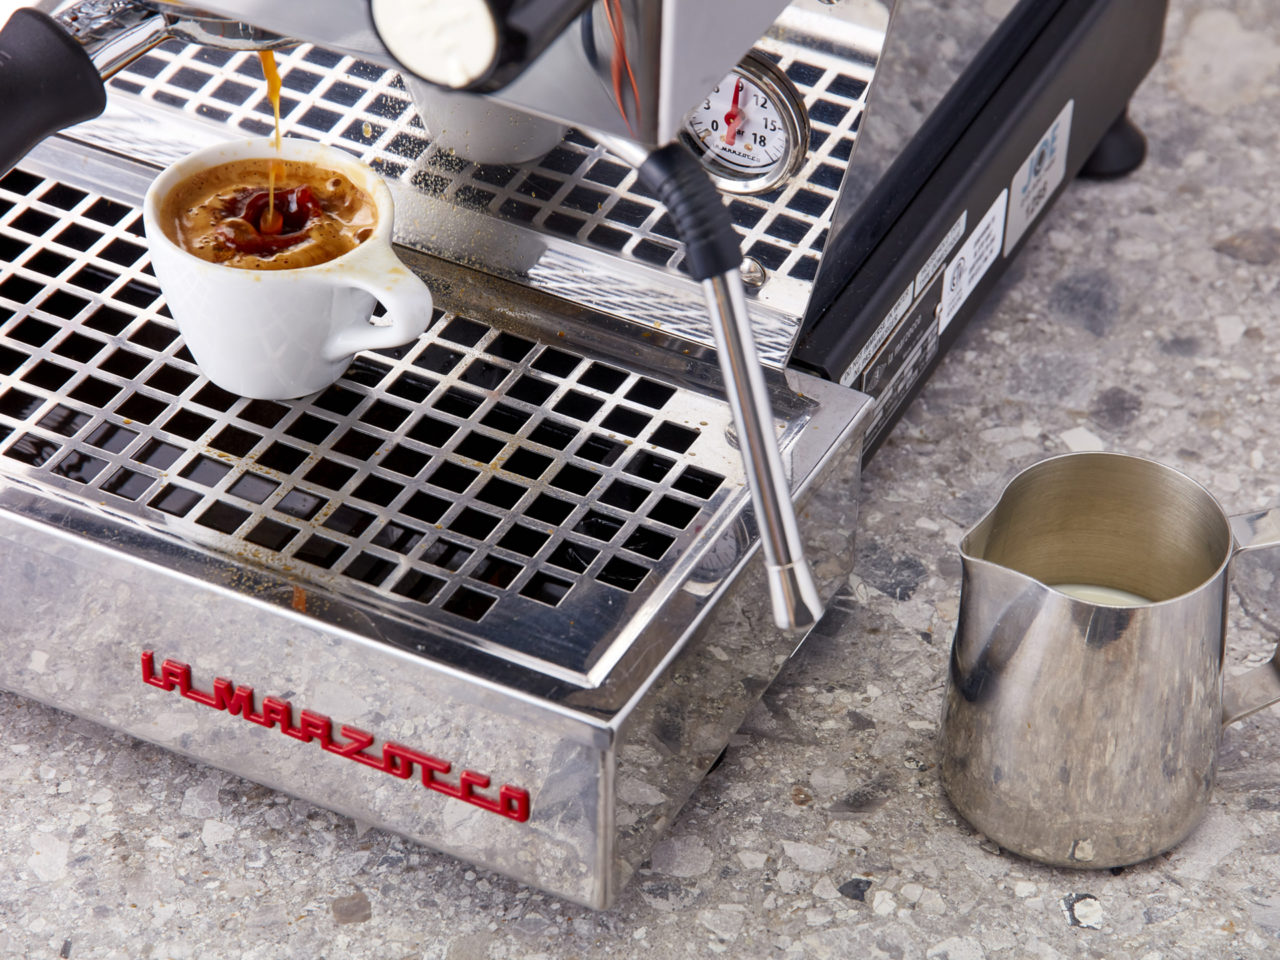 Espresso shot and La Marzocco espresso machine